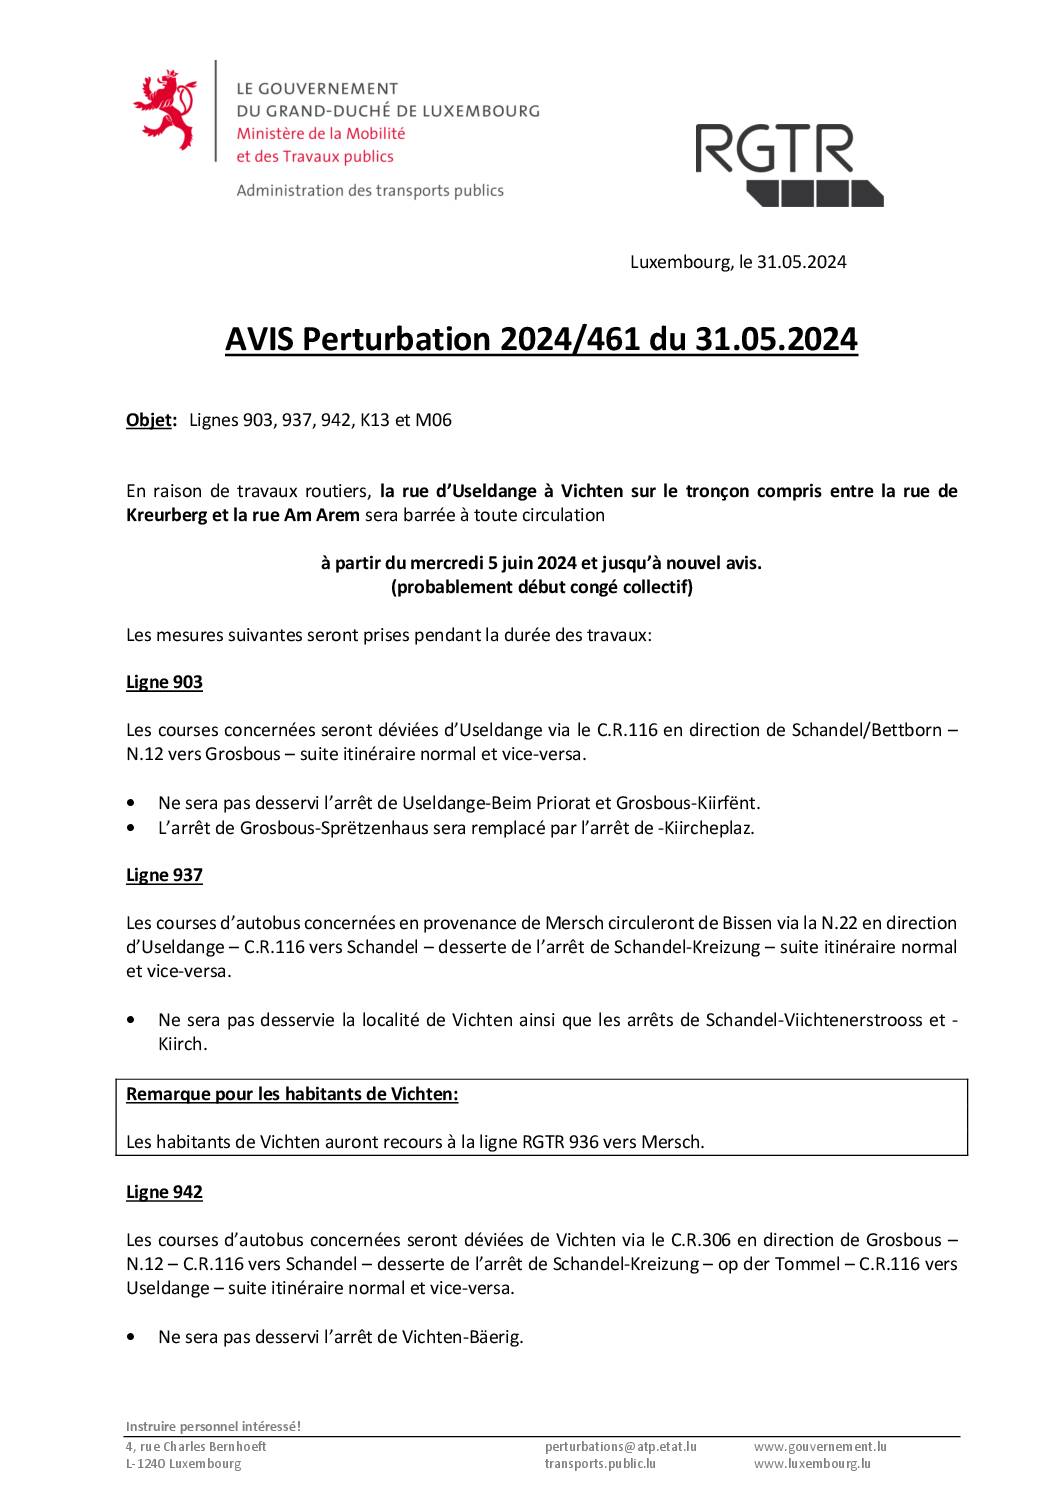 Avis RGTR - Vichten - travaux routiers dans la rte d'Useldange à partir du 5 juin 2024